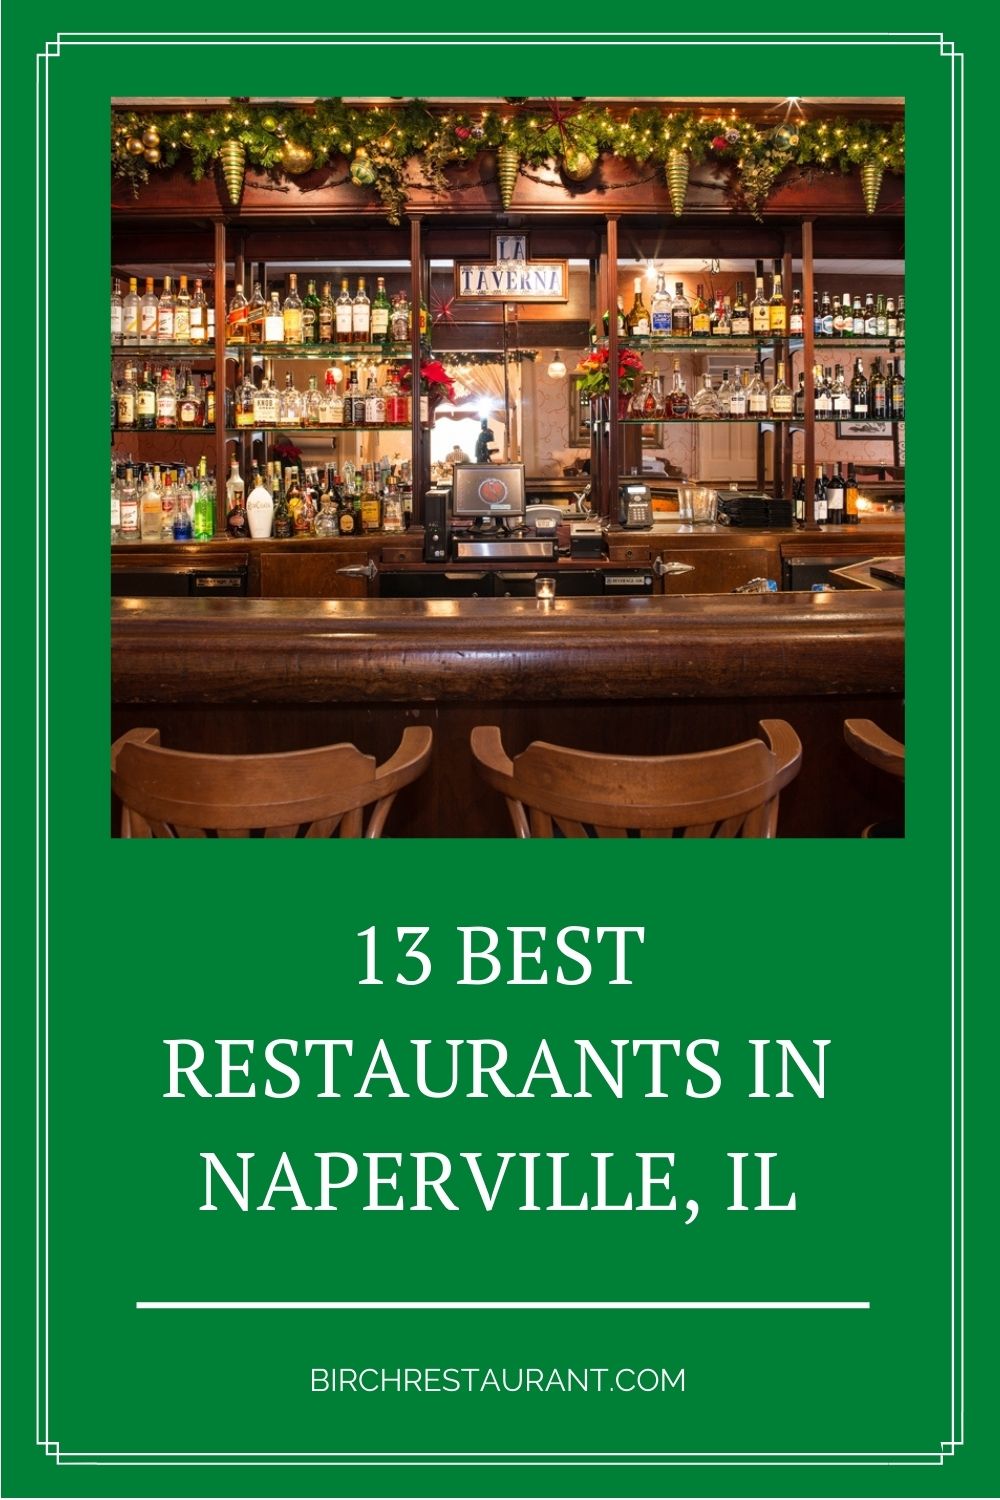 Best Restaurants in Naperville